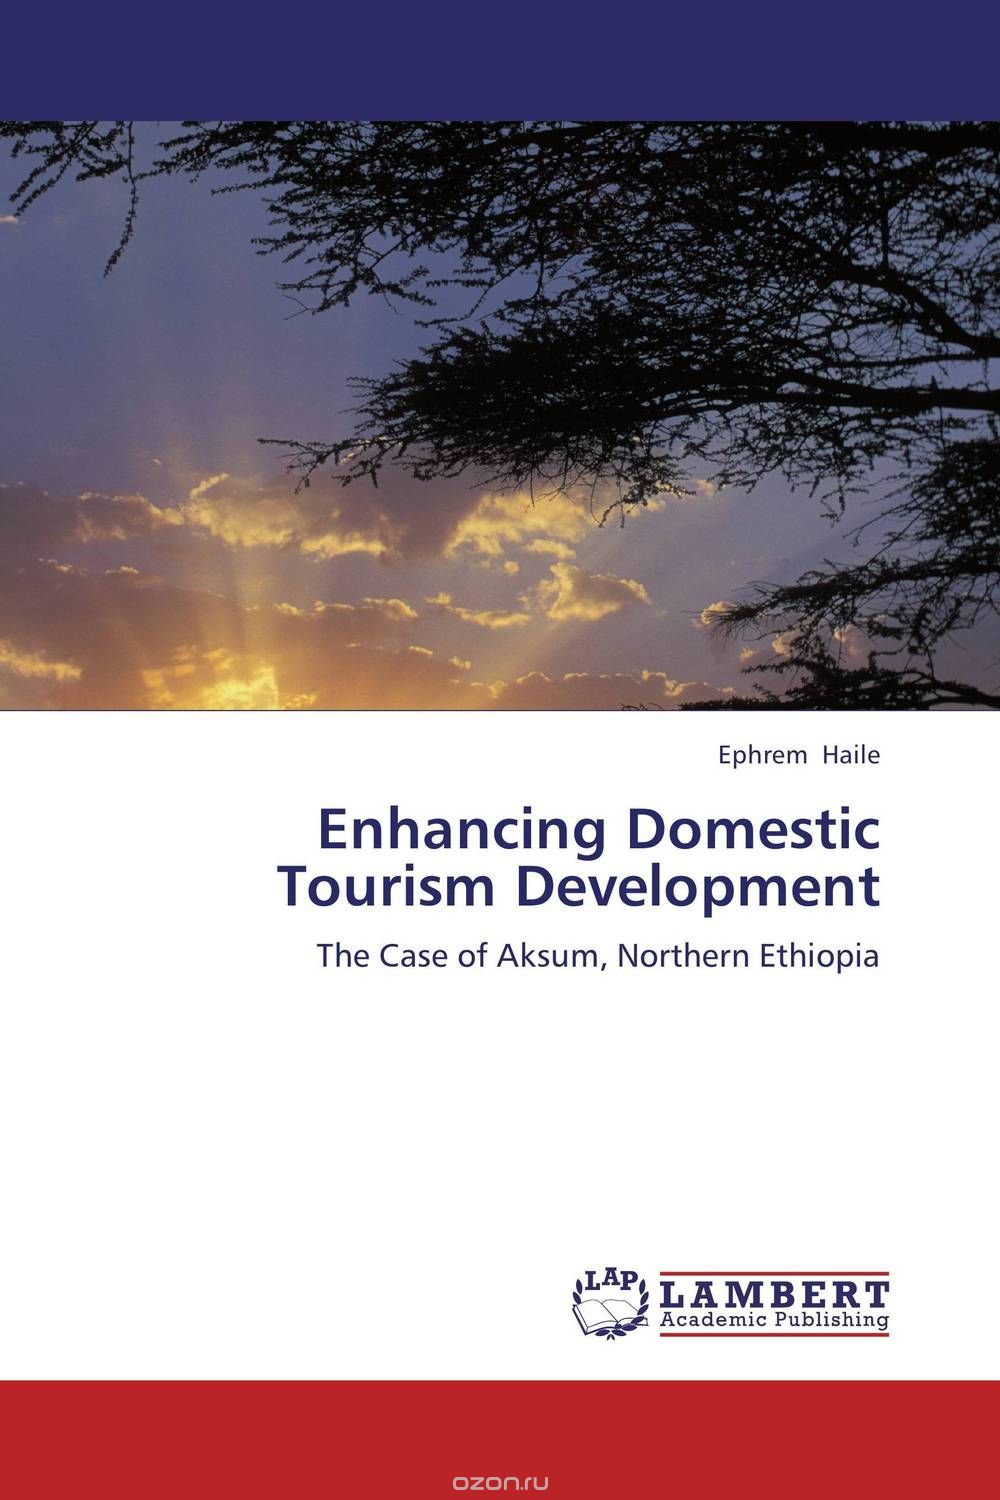 Скачать книгу "Enhancing Domestic Tourism Development"